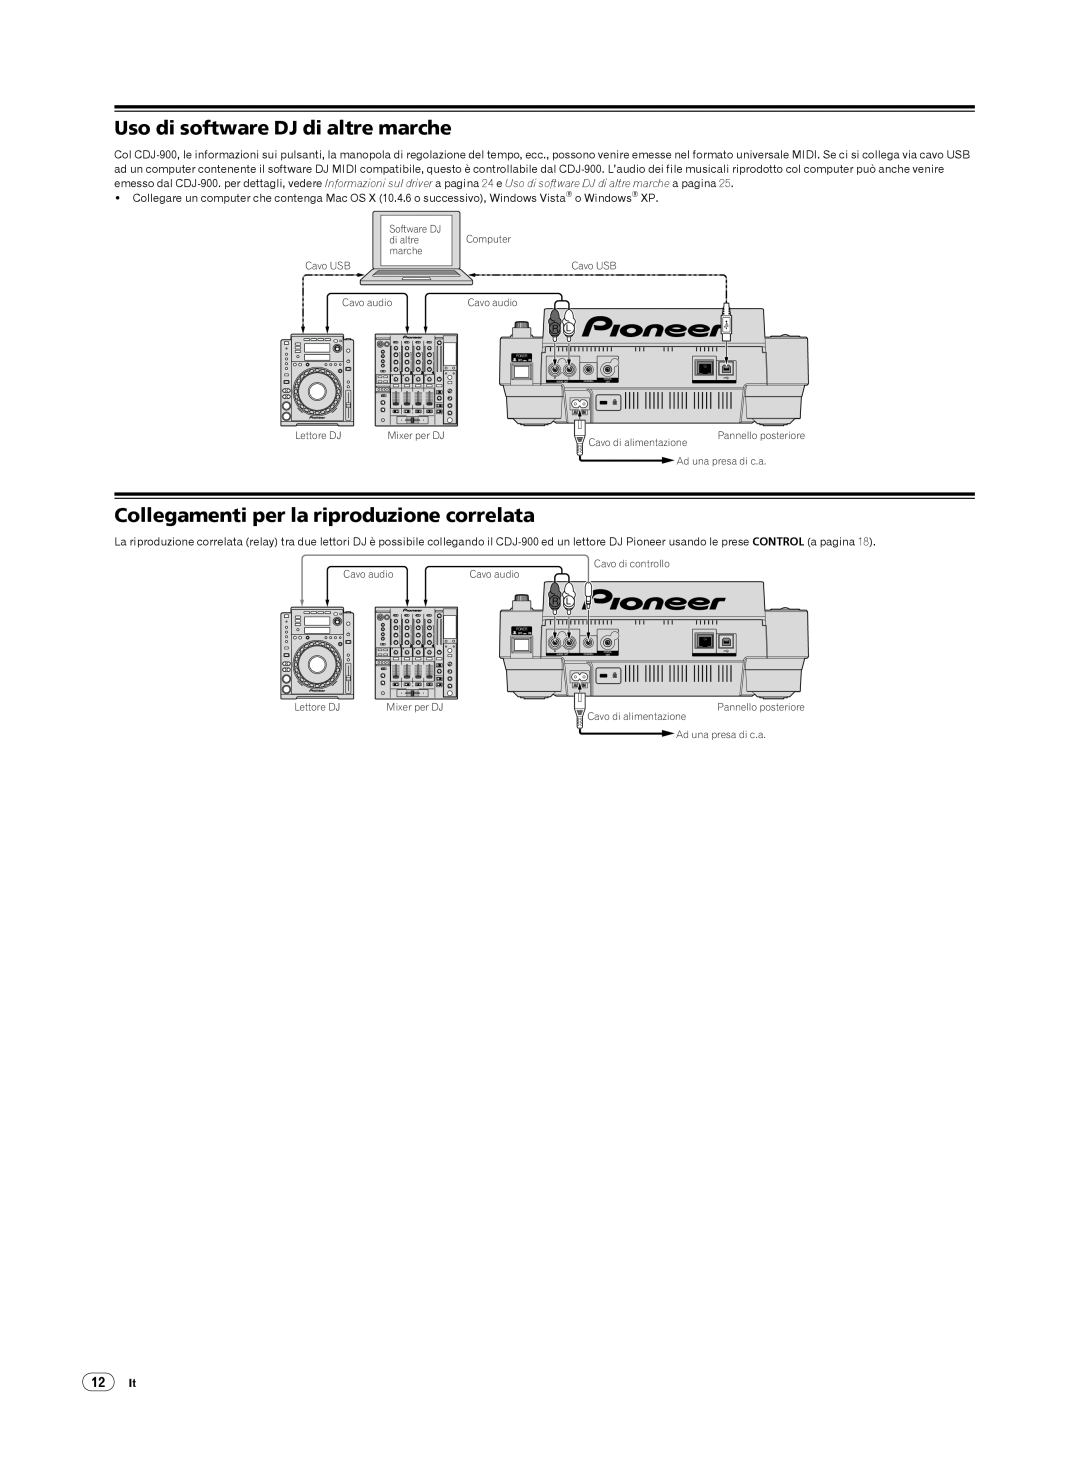 Pioneer CDJ-900, Multi Player Uso di software DJ di altre marche, Collegamenti per la riproduzione correlata, 12It 